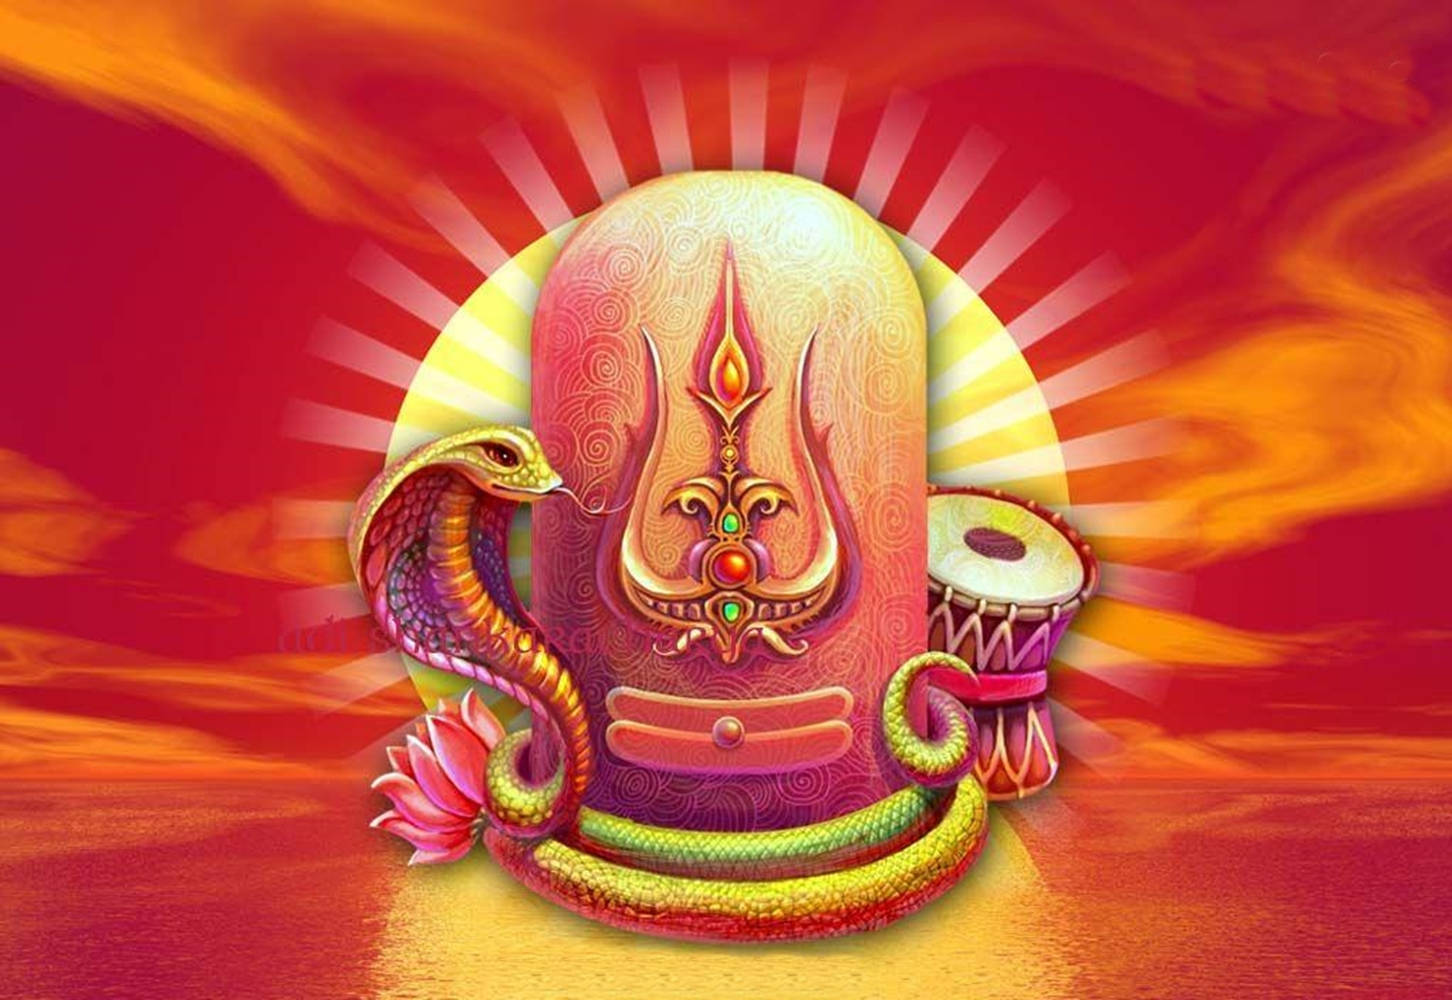 Röttdigitalt Shiva Lingam. Wallpaper